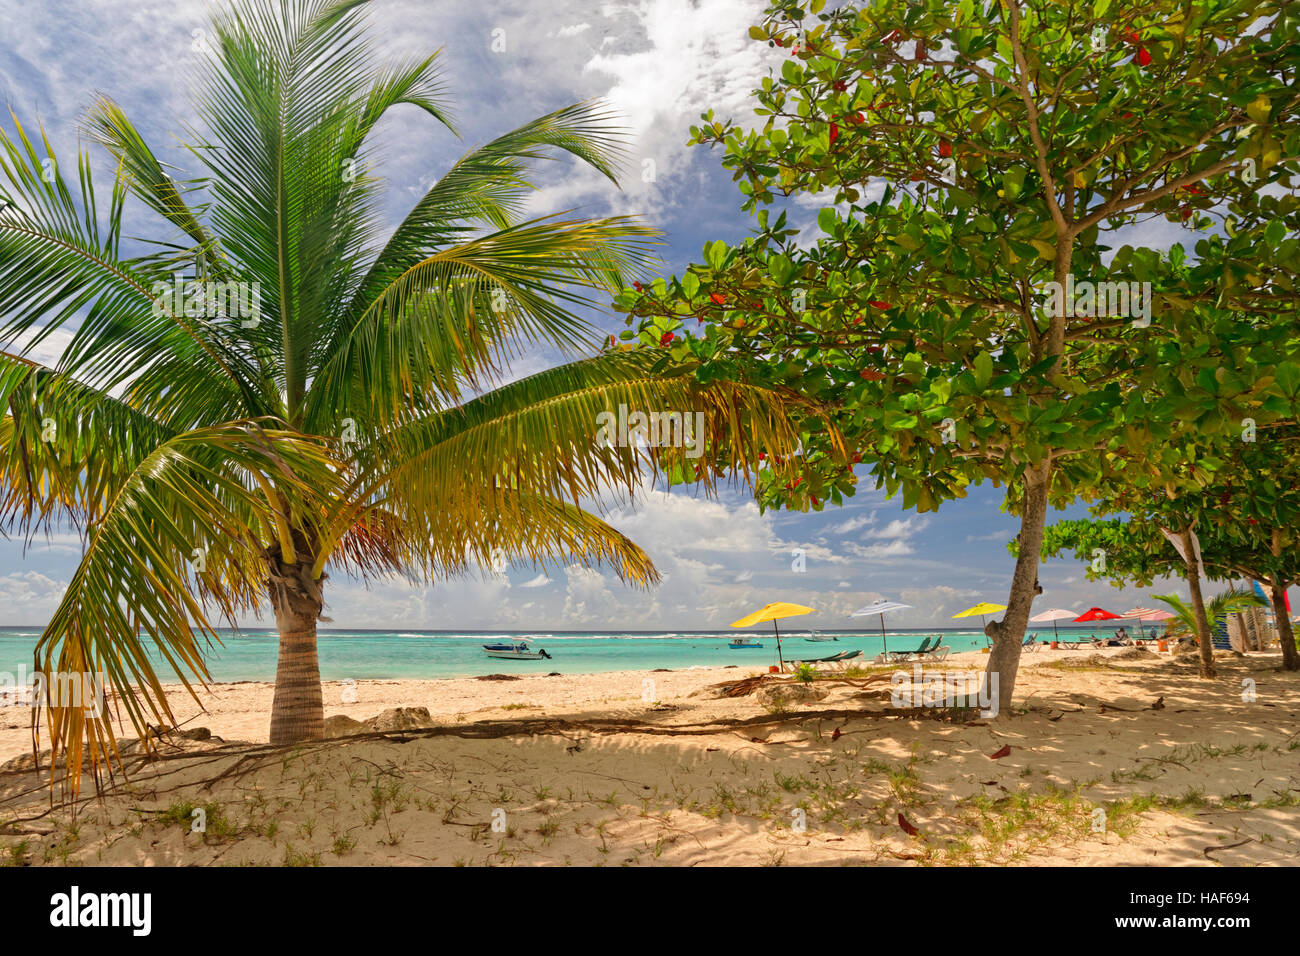 Worthing Beach à Worthing, entre St Lawrence Gap et de Bridgetown, Barbade, Caraïbes. Banque D'Images